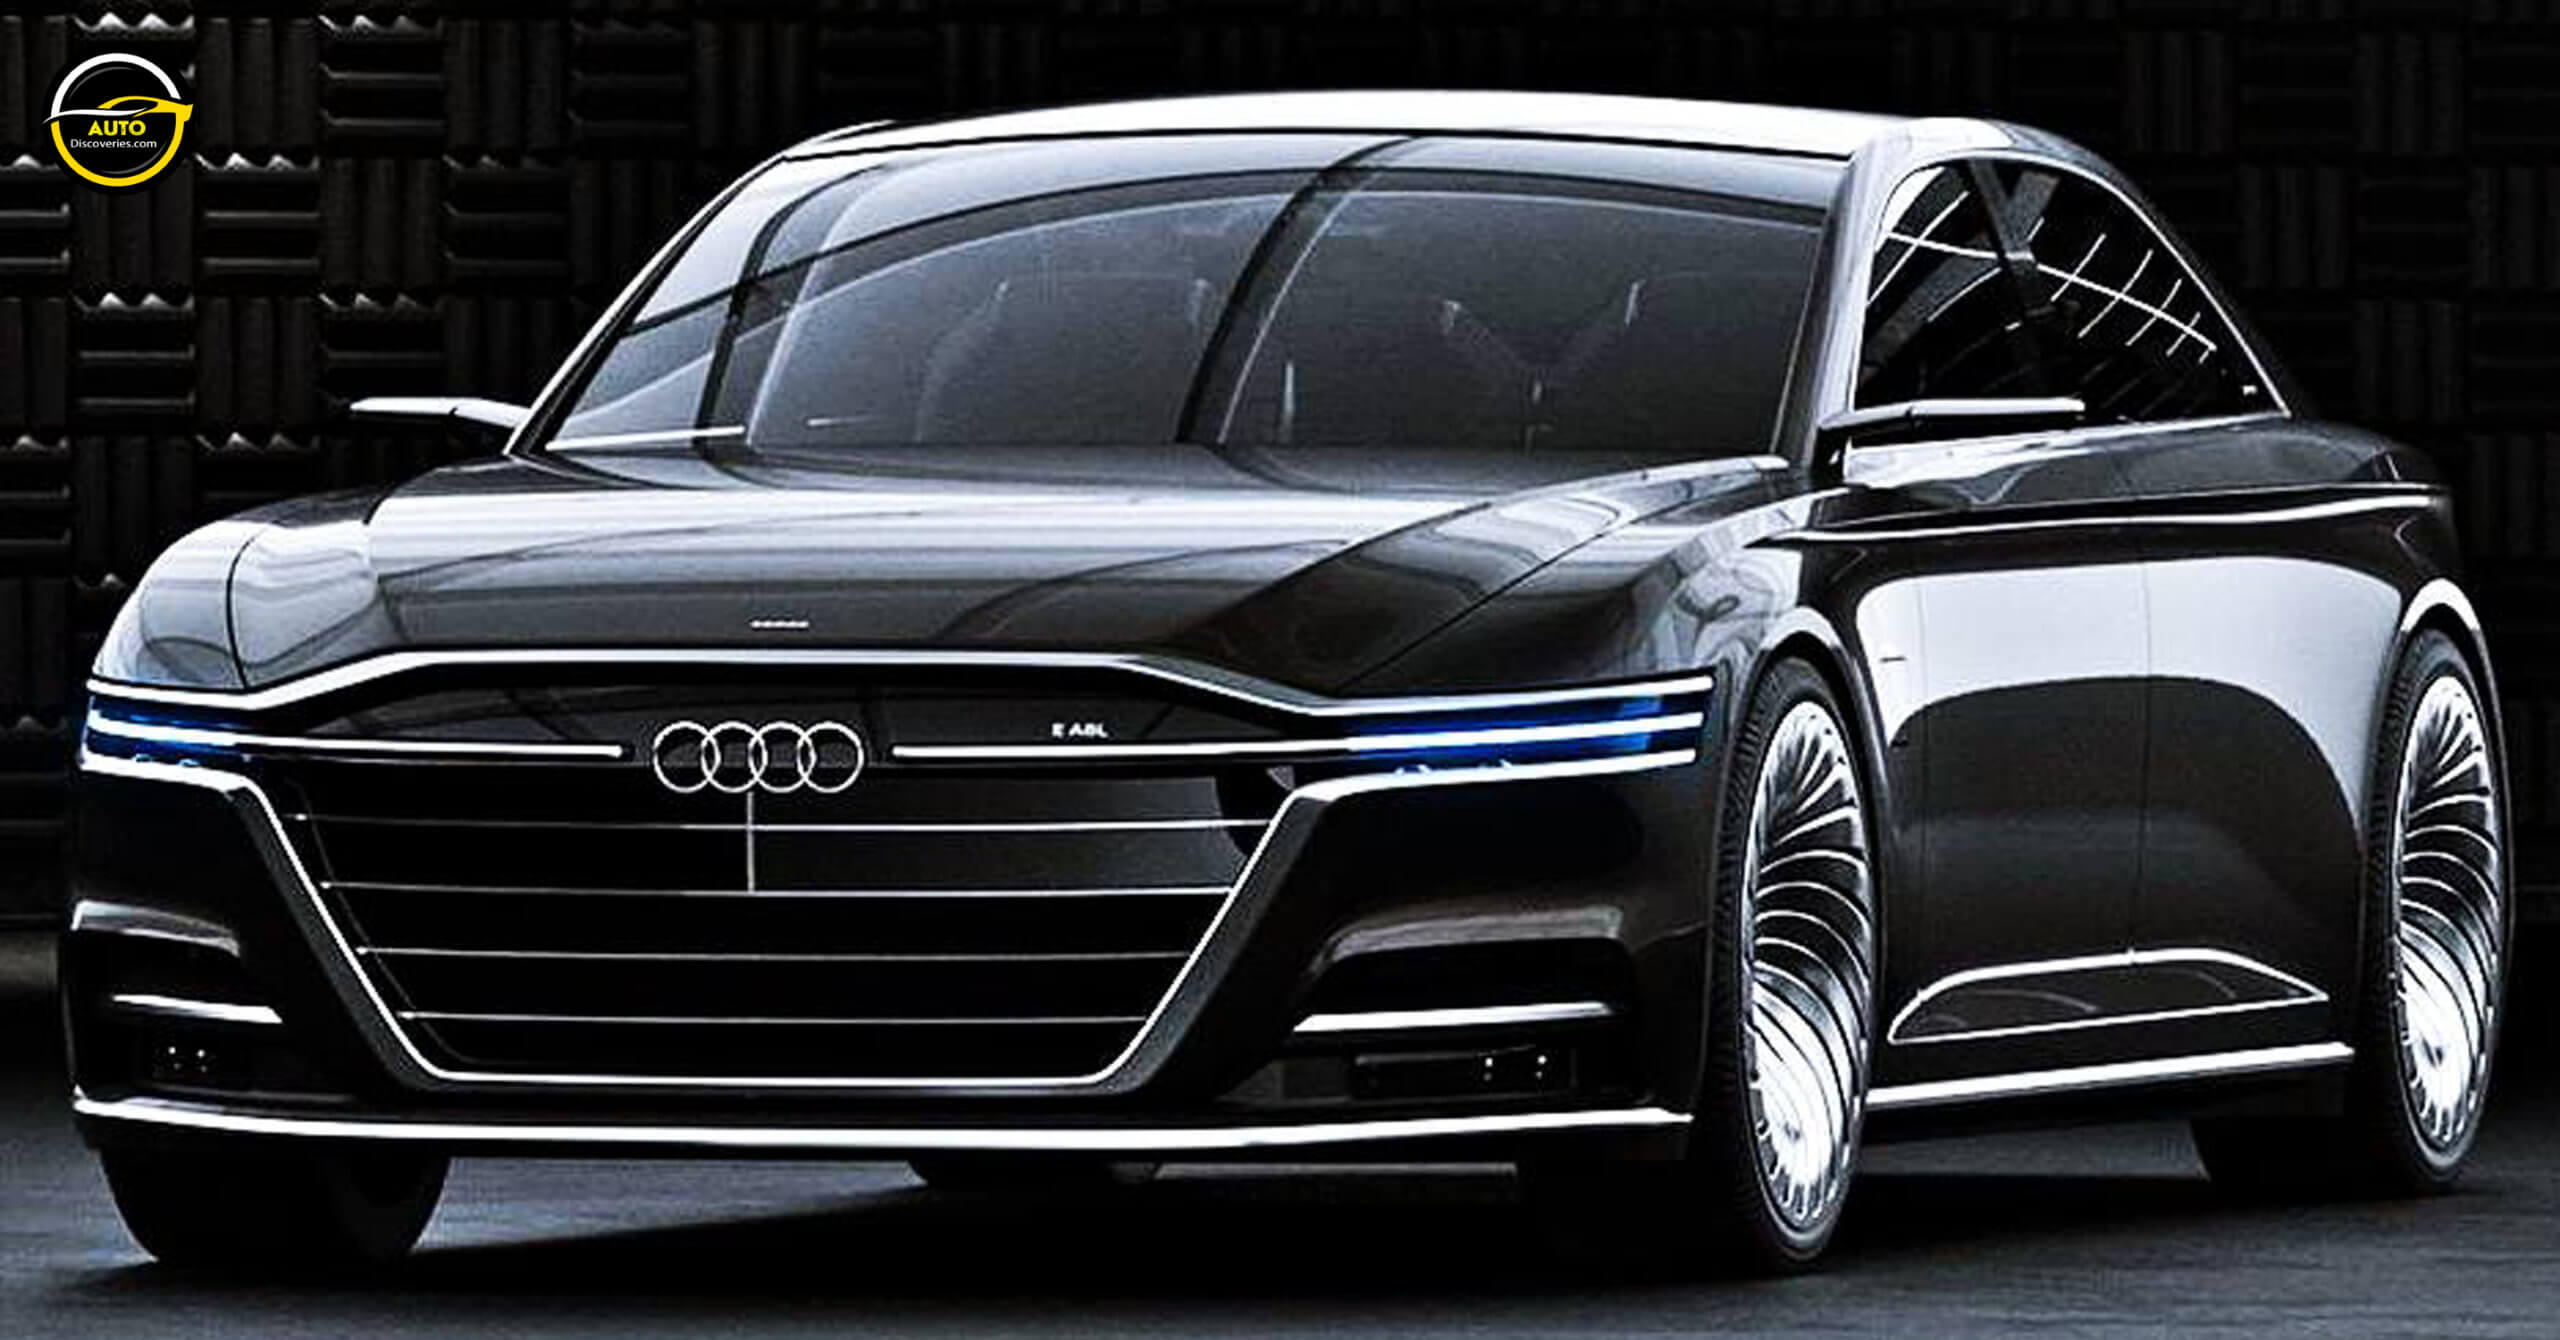 Audi confirma novo A8 para 2017 com condução autônoma